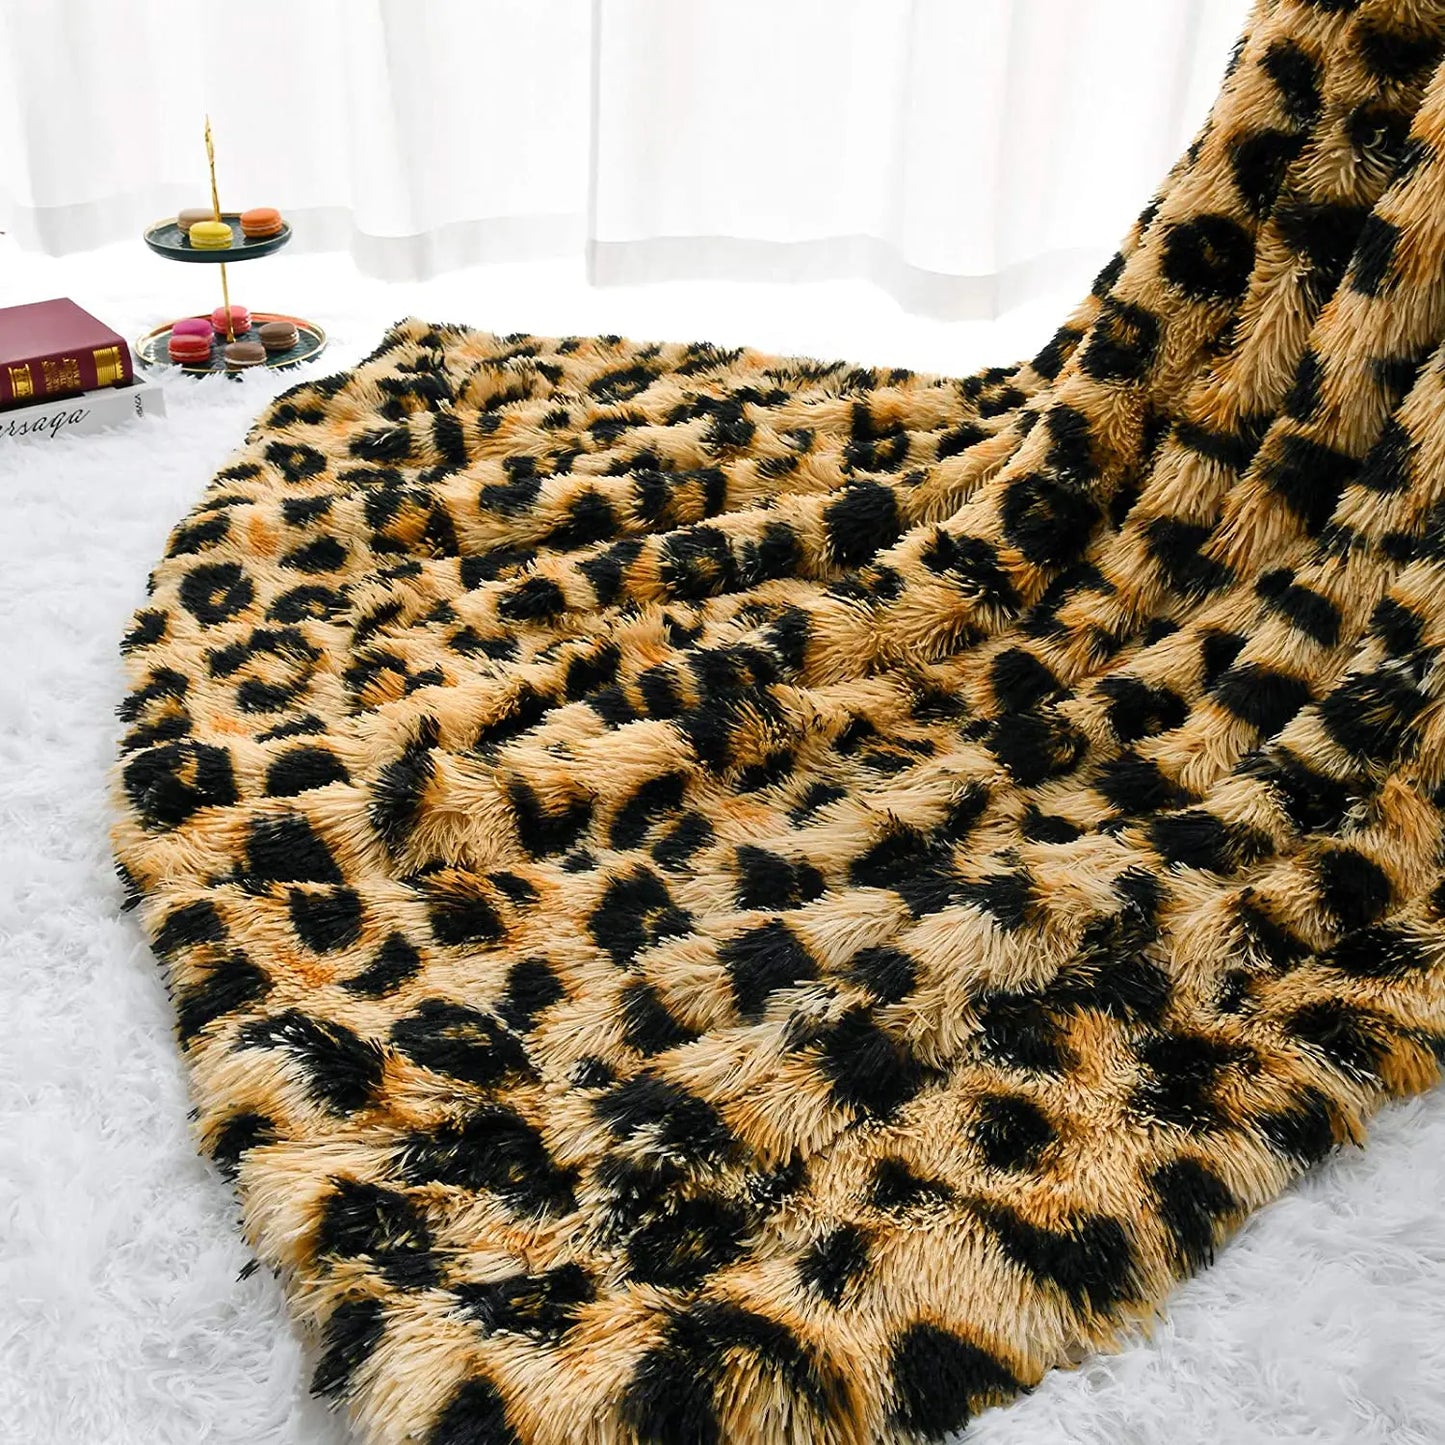 Luksus leopardsøm kaste tæppe værelse indretning plaid sengetæpper baby tæpper behåret vinterbed dækker sofa dækker stor tyk lodret